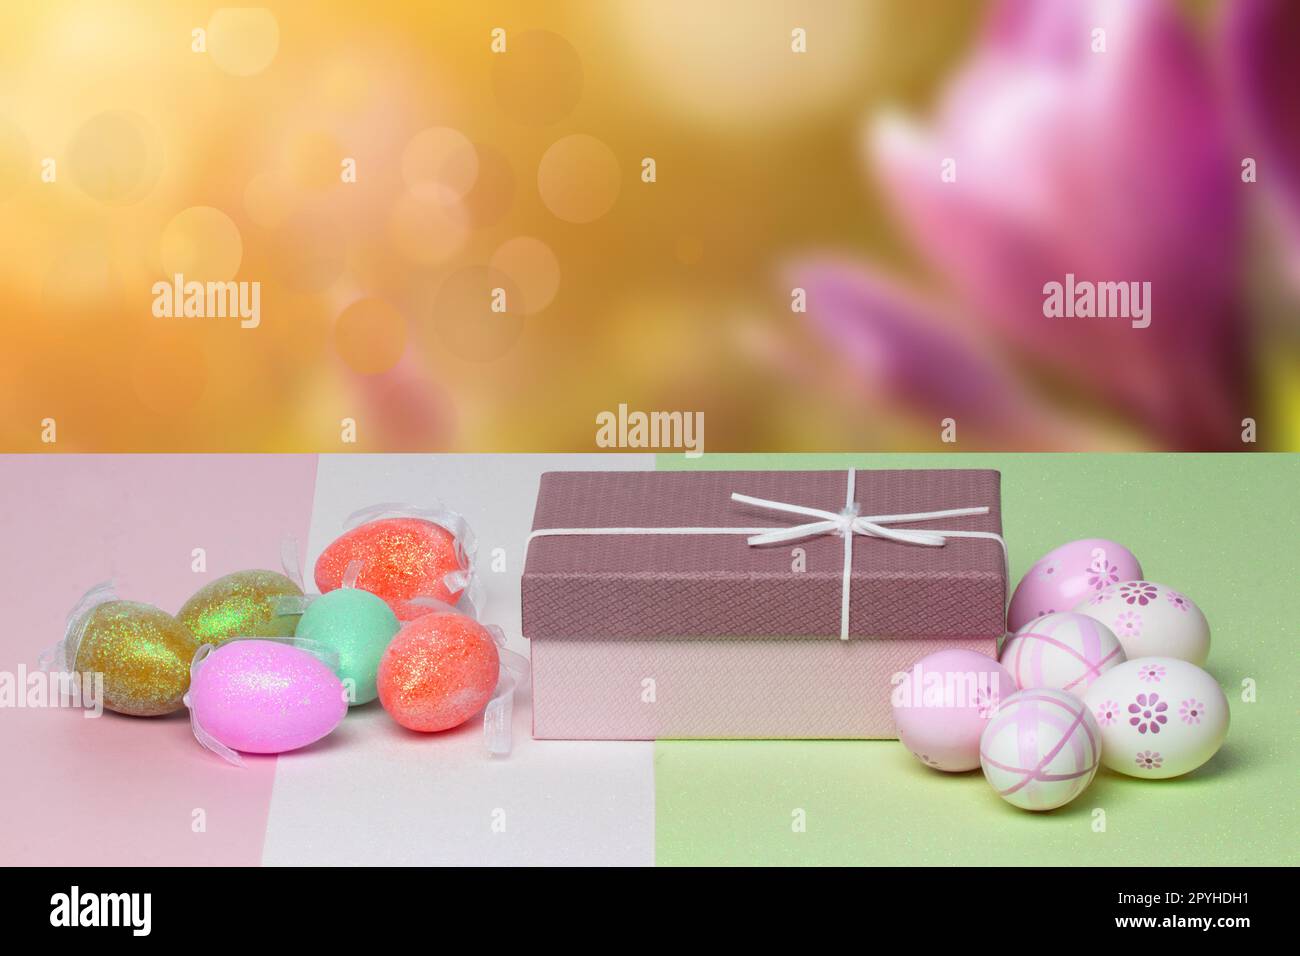 Vorlage für Ostergrußkarte. Nahaufnahme von bunten Eiern und einer Geschenkbox auf einem mehrfarbigen Tisch vor abstraktem Frühlingshintergrund. Kopierbereich für Ihr Textdesign. Stockfoto